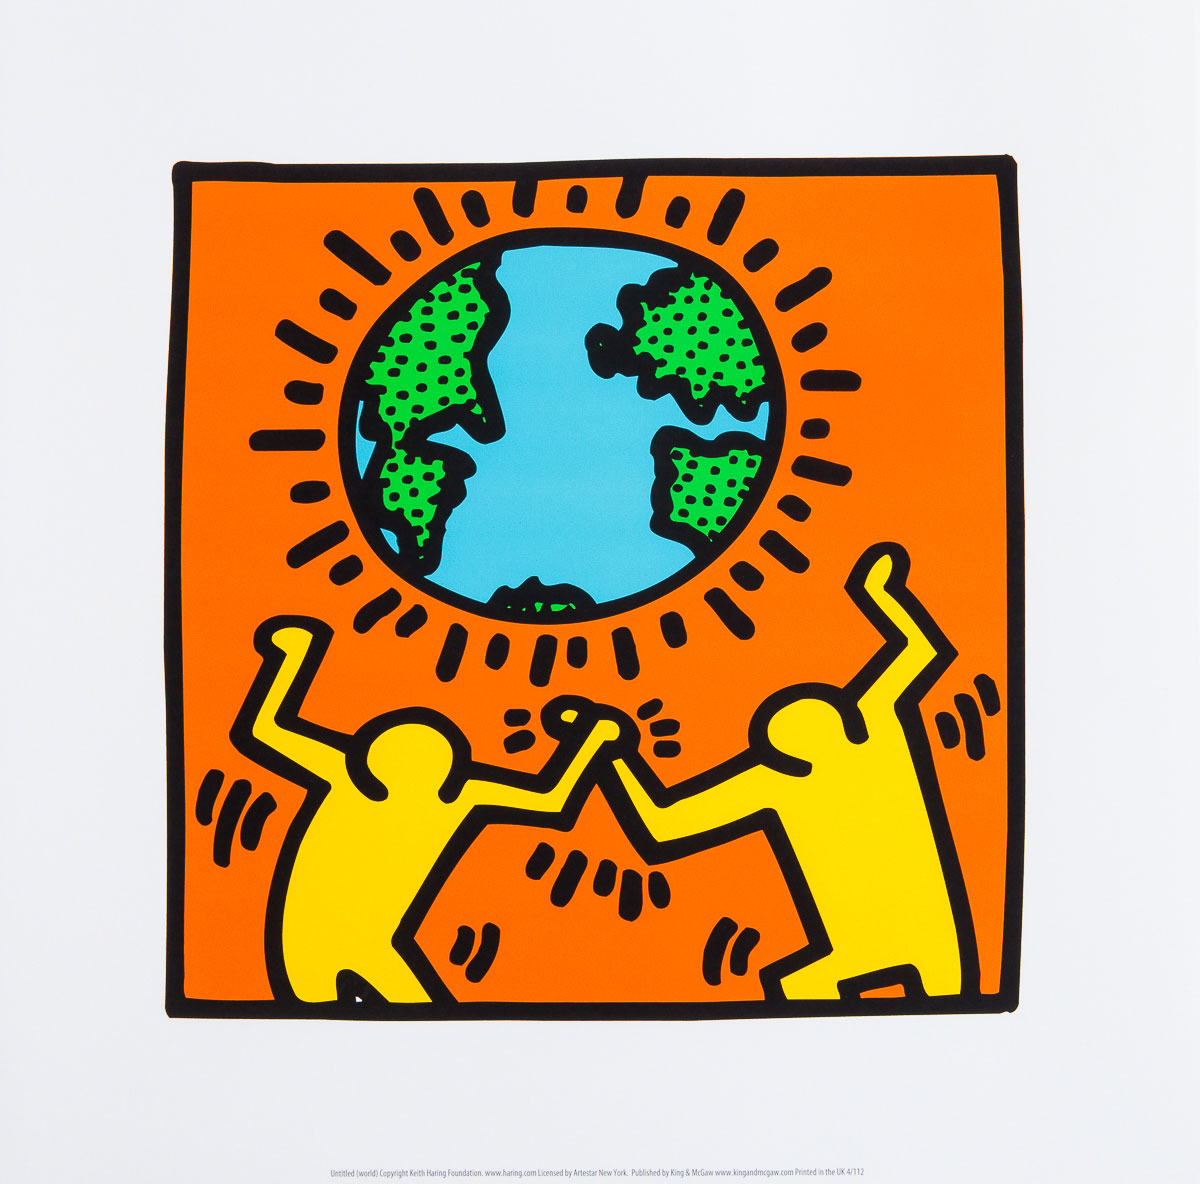 Lámina Keith Haring : Earth, world - Lámina